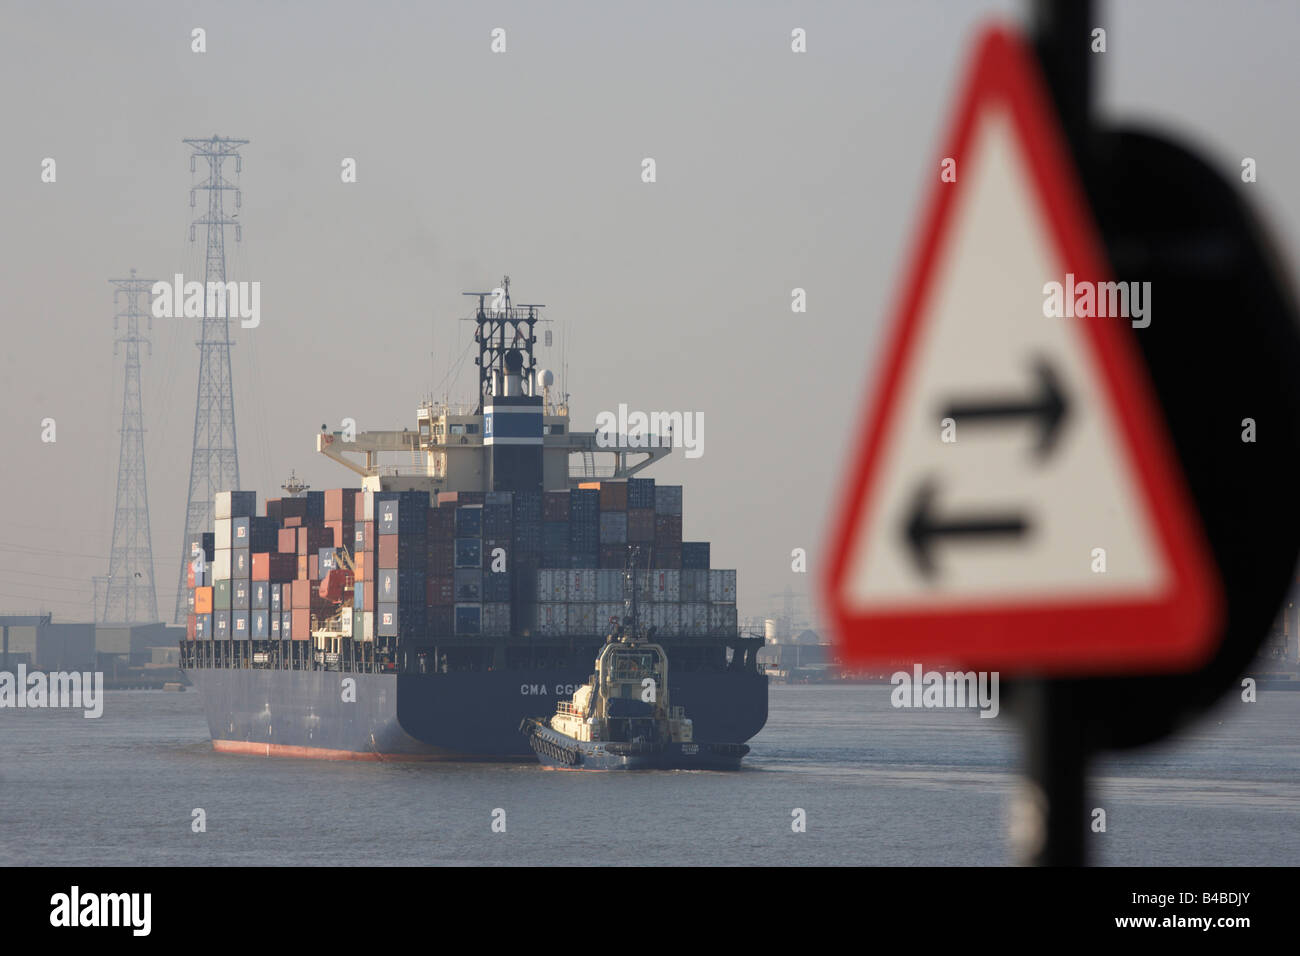 Vorbei an zwei-Wege-Schild orientiert sich ein riesiger Container Frachtschiff an Schlepper, Lockerung stromaufwärts auf der Themse gegenüber Tilbury Docks Stockfoto